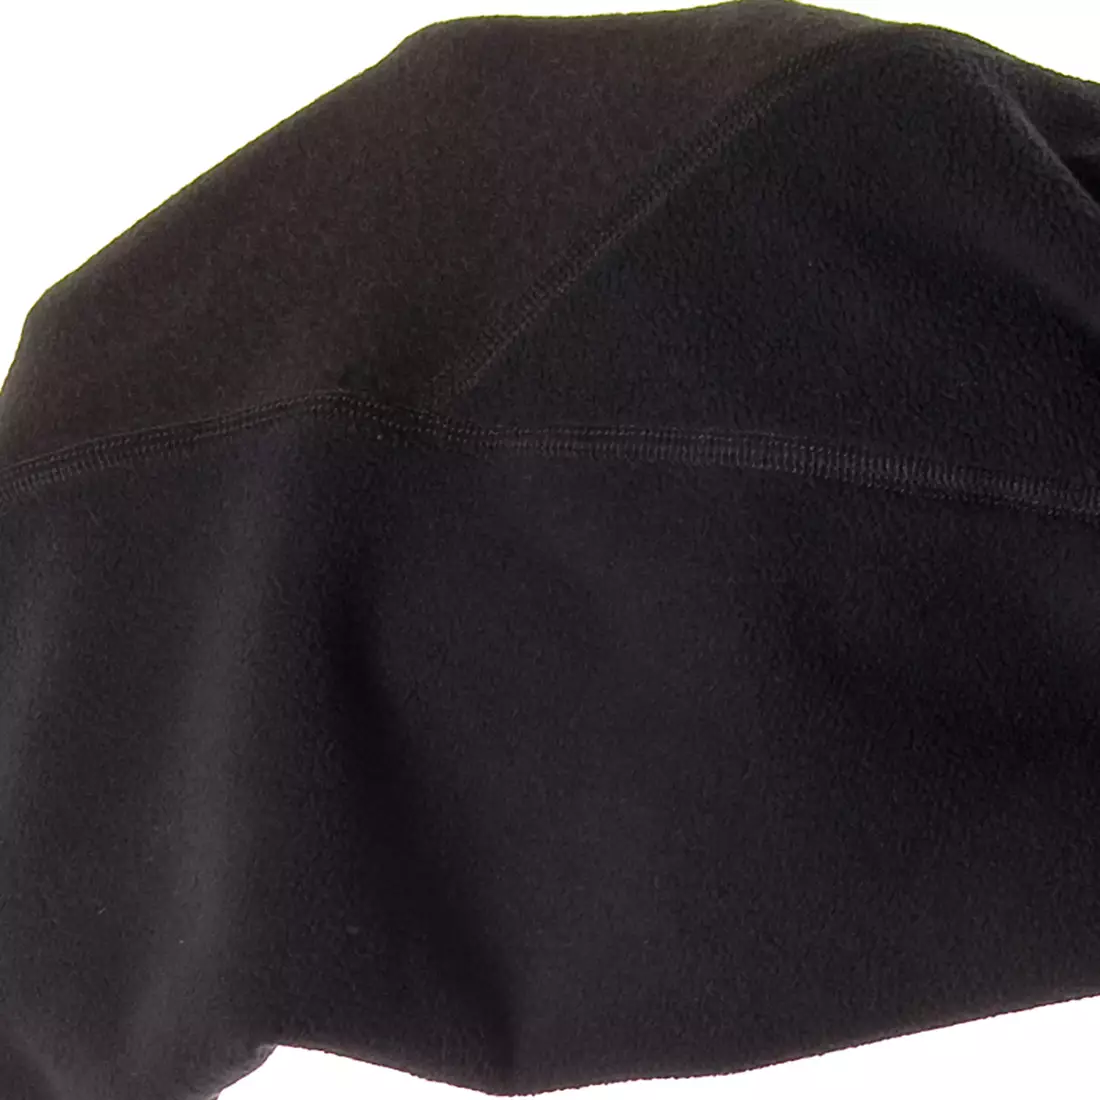 KAYMAQ ELWIN-W1001 Pantaloni izolați pentru ciclism de damă, fără bretele, membrană Zero Wind, negru